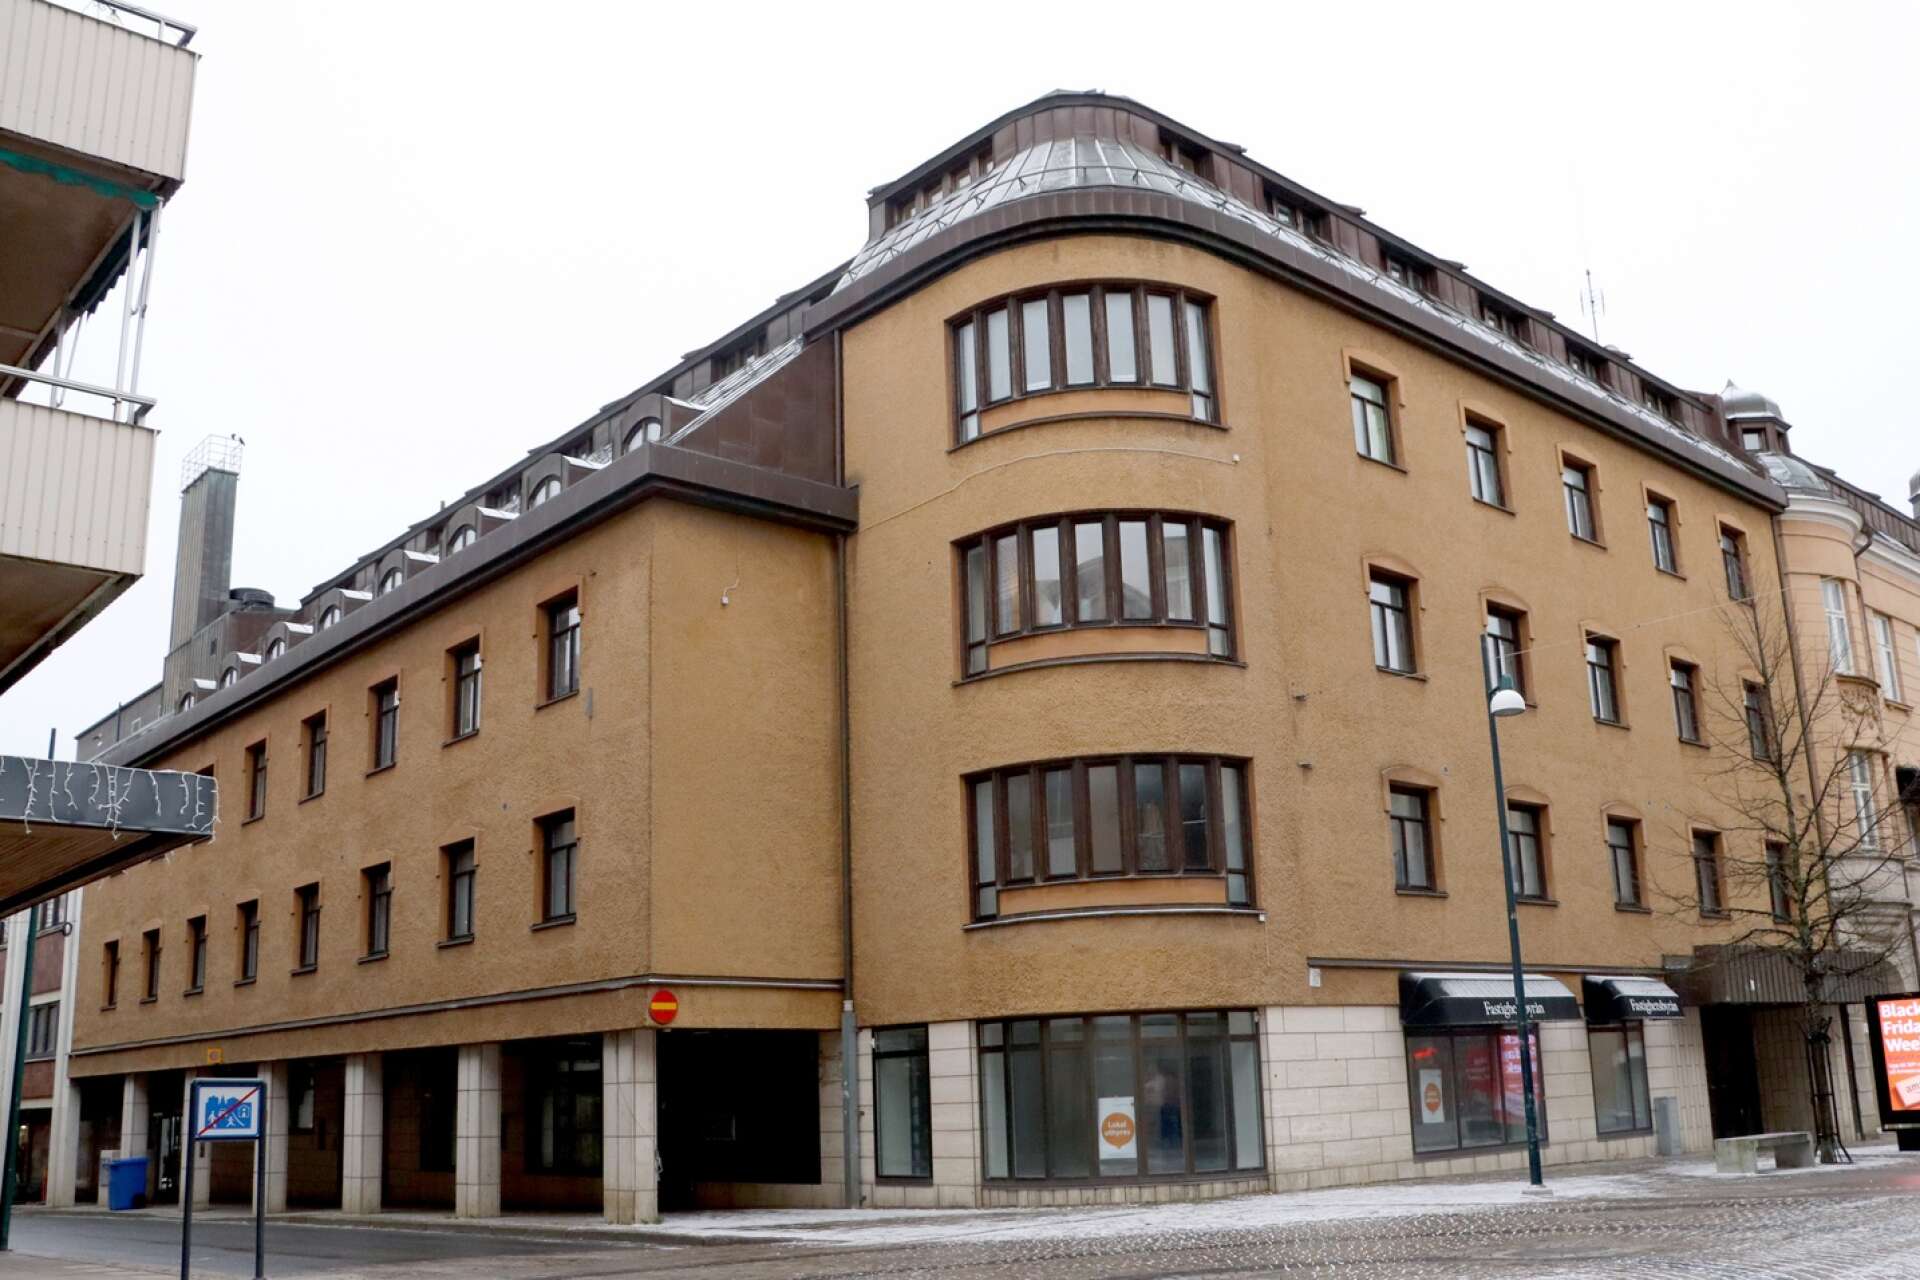 Oscar Properties befinner sig i en ekonomisk kris, men äger fortfarande fastigheten Vidar 1 i Skövde.